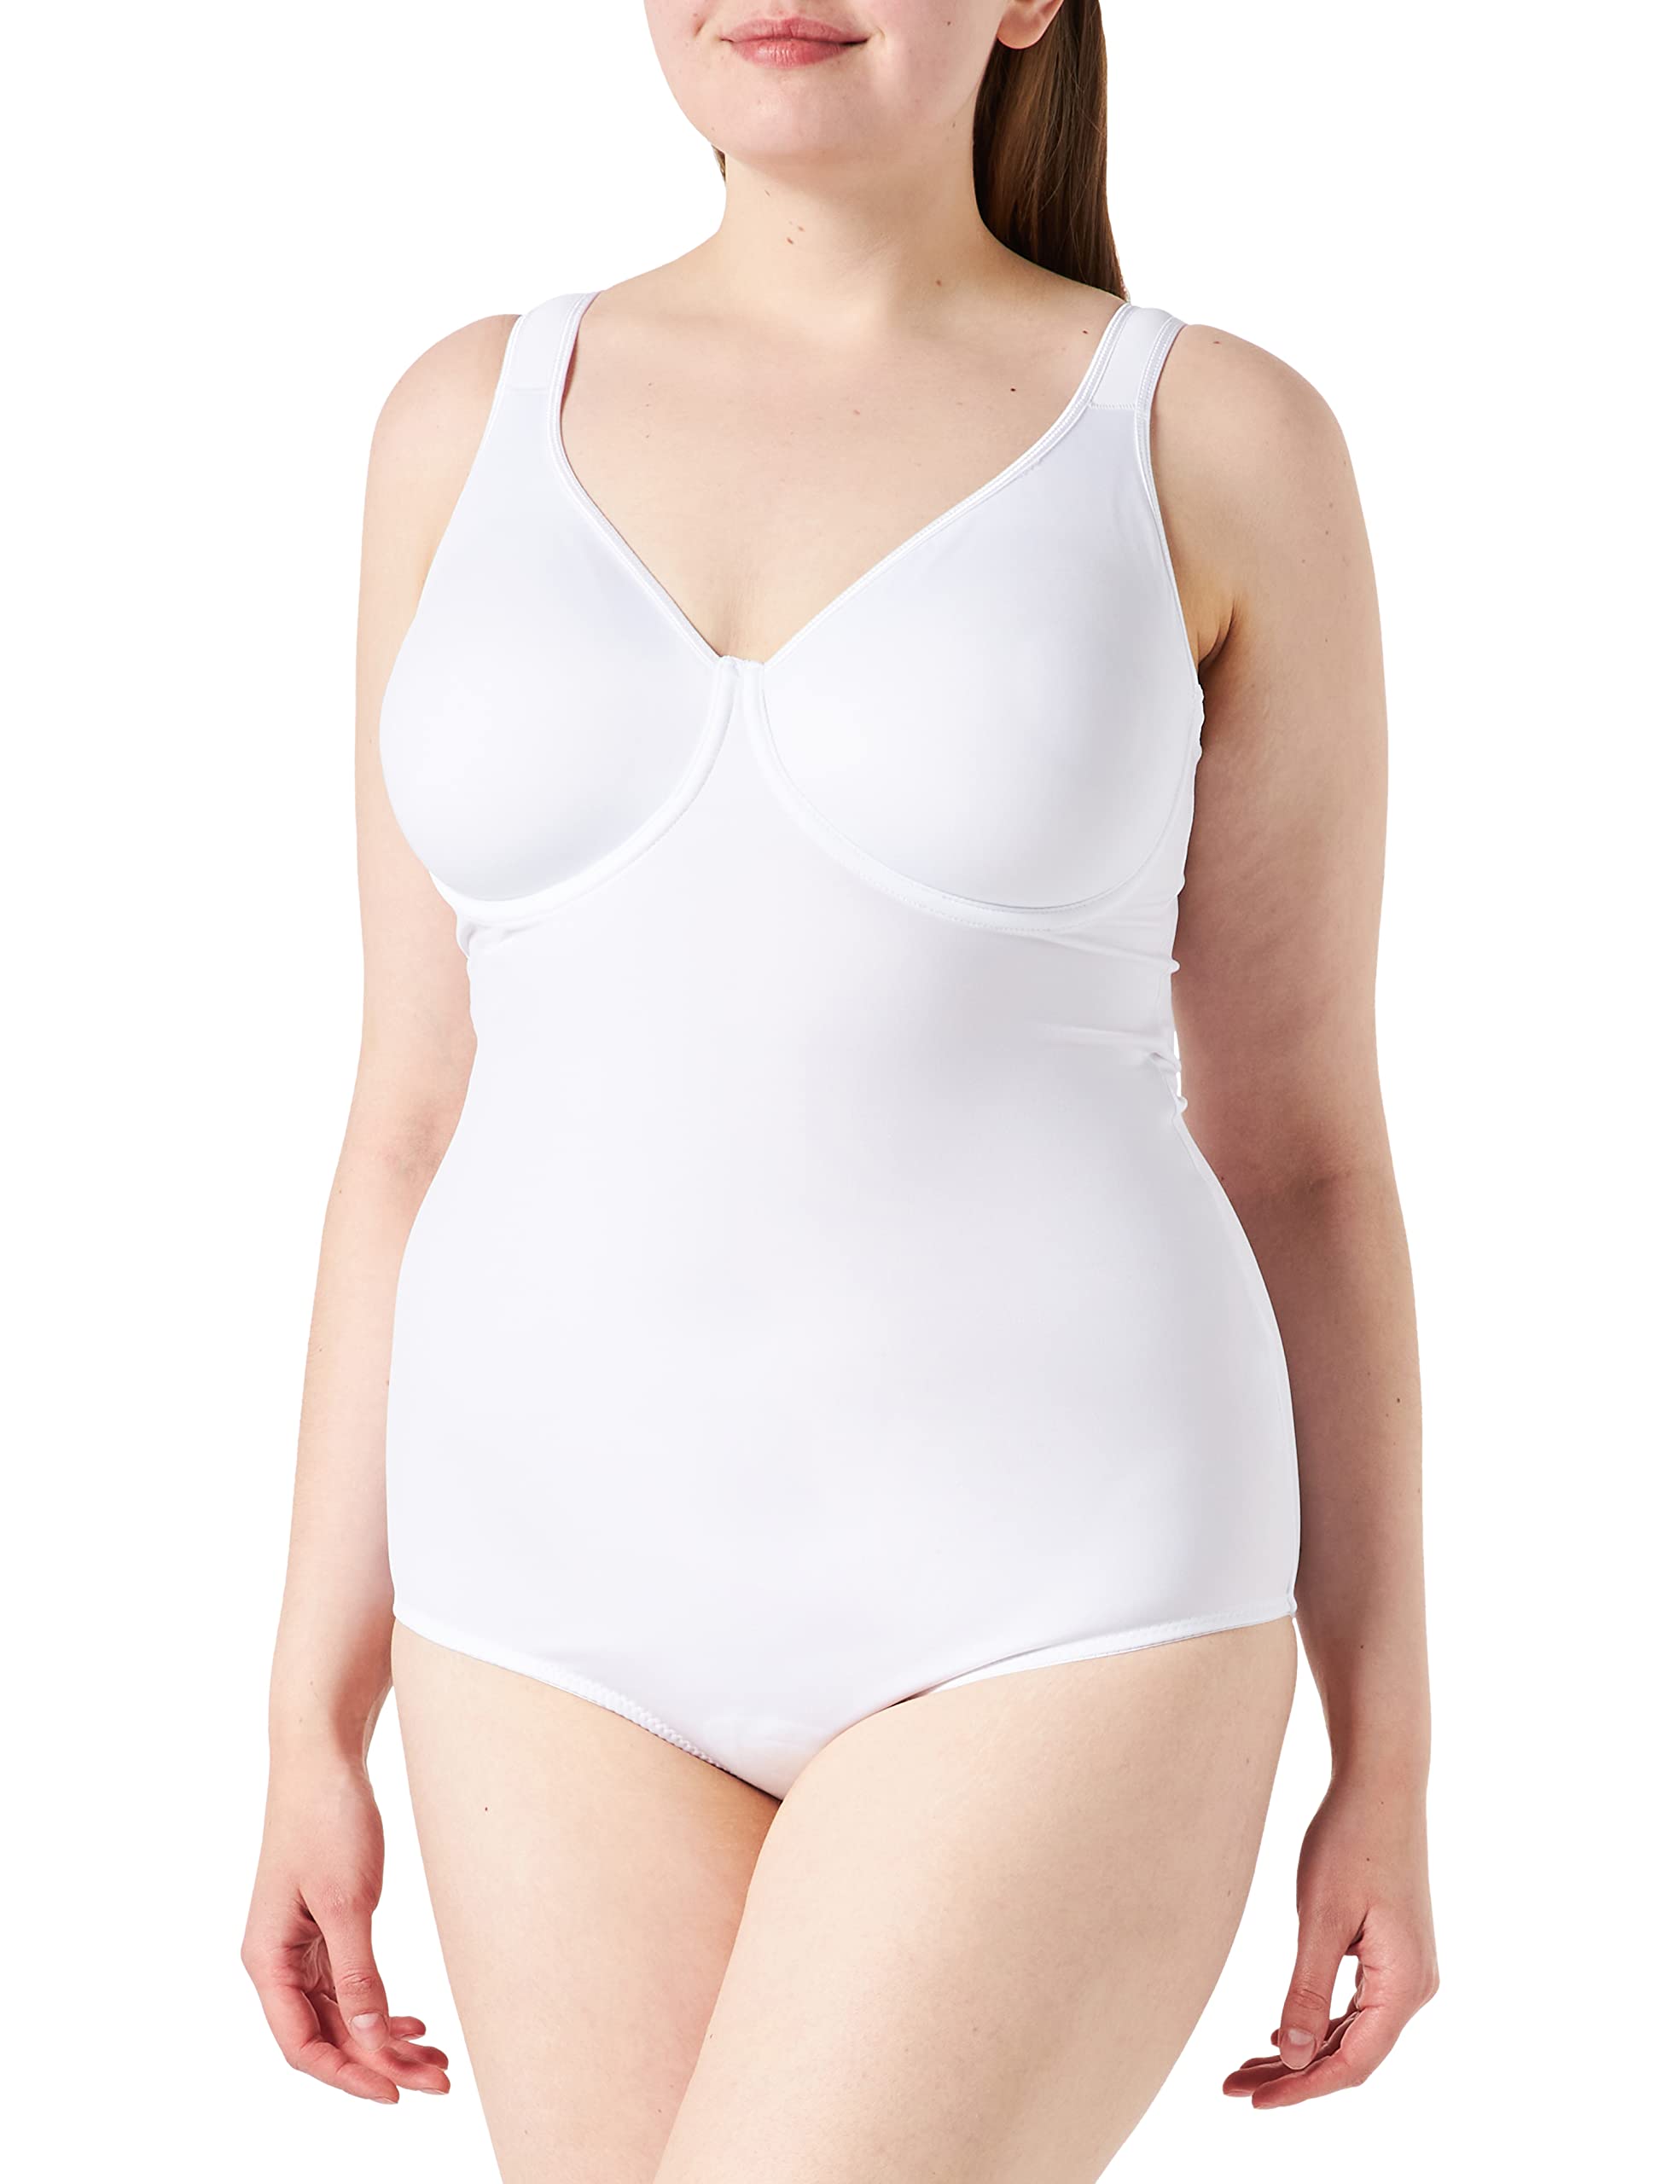 Sassa Damen Formender Body doppelt vorgeformt 00903, Einfarbig, Gr. 75B, Weiß (Weiß 00100)